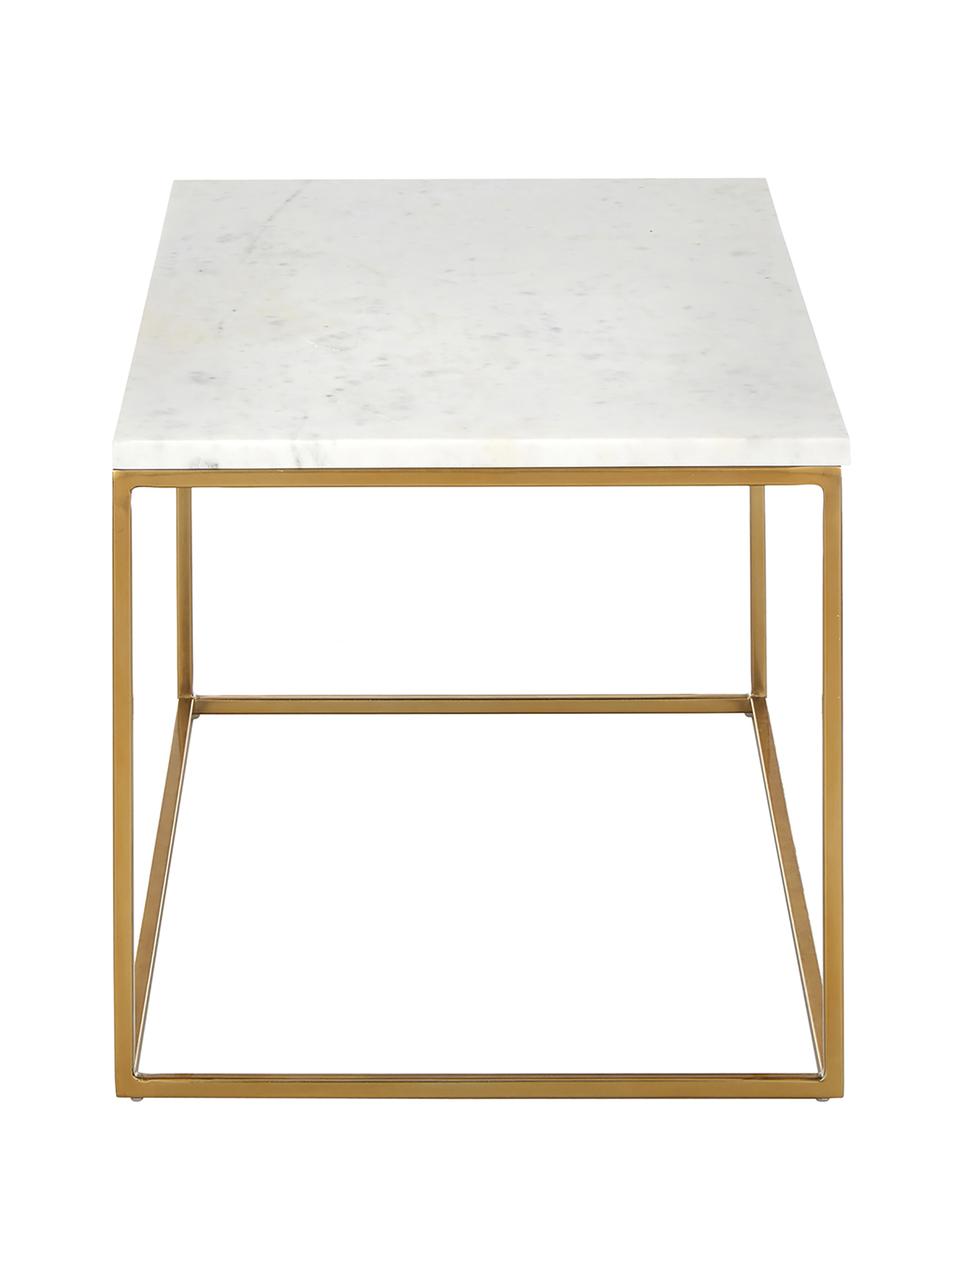 Marmor-Couchtisch Alys, Tischplatte: Marmor, Gestell: Metall, pulverbeschichtet, Weiß, marmoriert, Goldfarben, B 80 x T 45 cm